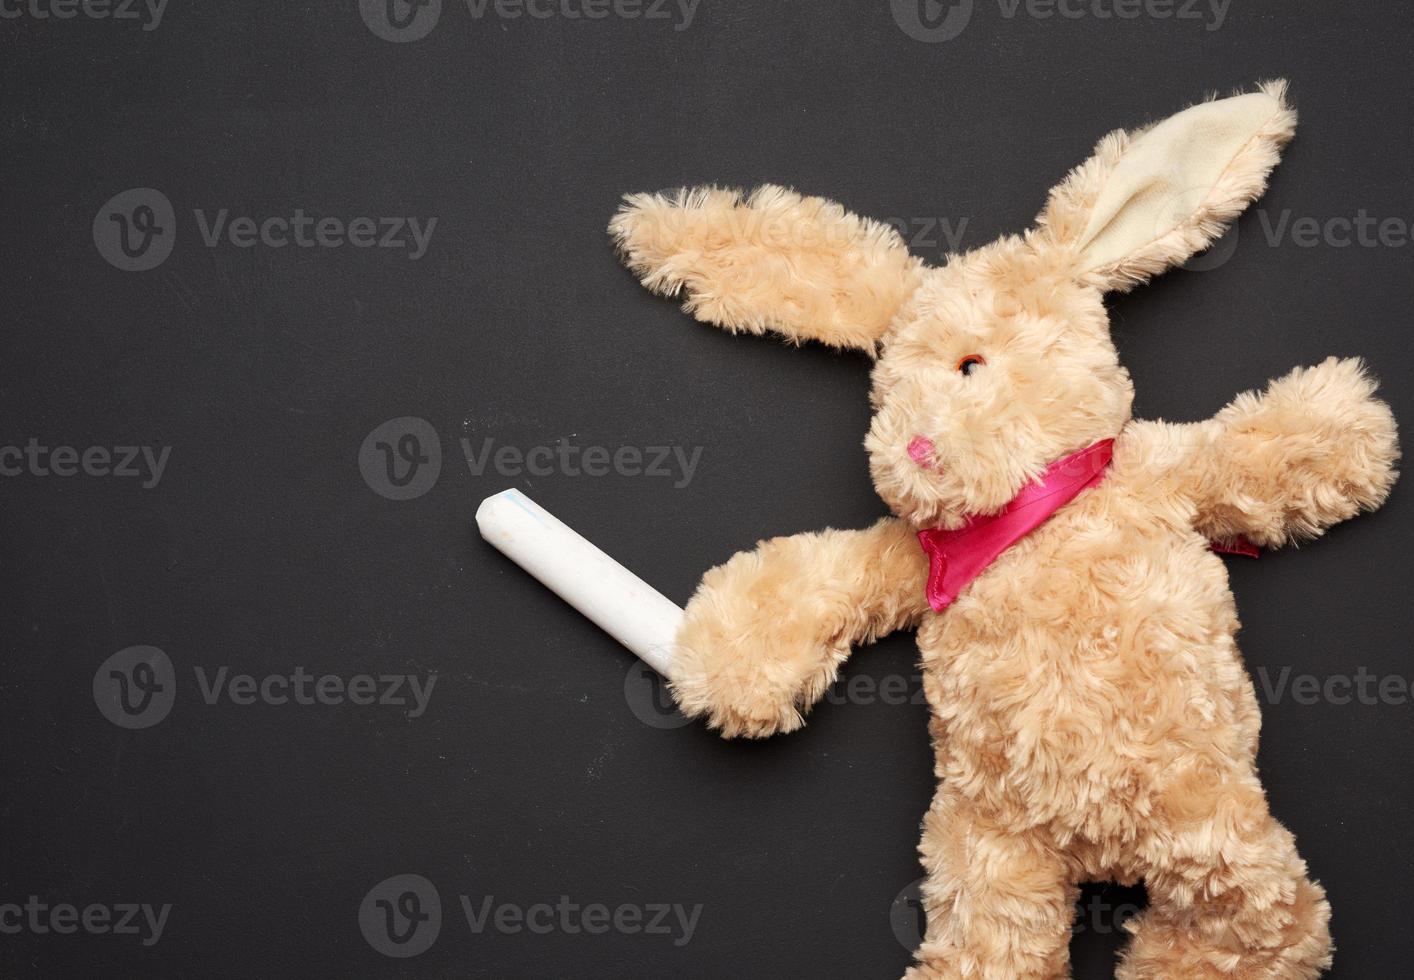 juguete de conejo de peluche beige con orejas largas y tiza blanca en una pata en una pizarra negra foto